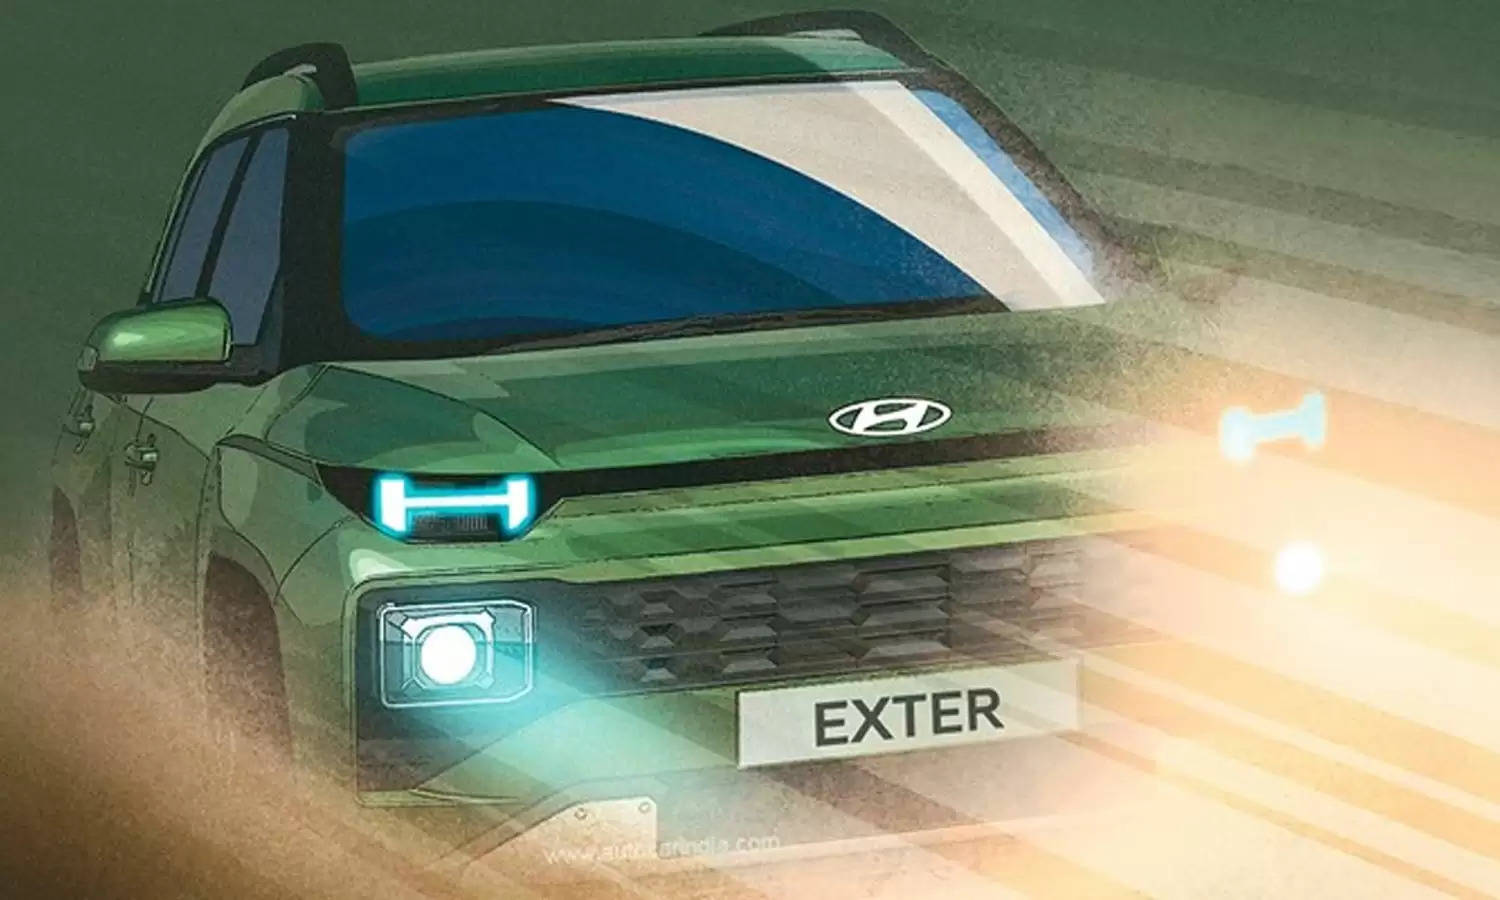 जल्द लांच होने जा रही Hyundai Exter! बेहतरीन एडवांस फीचर्स और धांसू लुक से बना रही सबको दीवाना